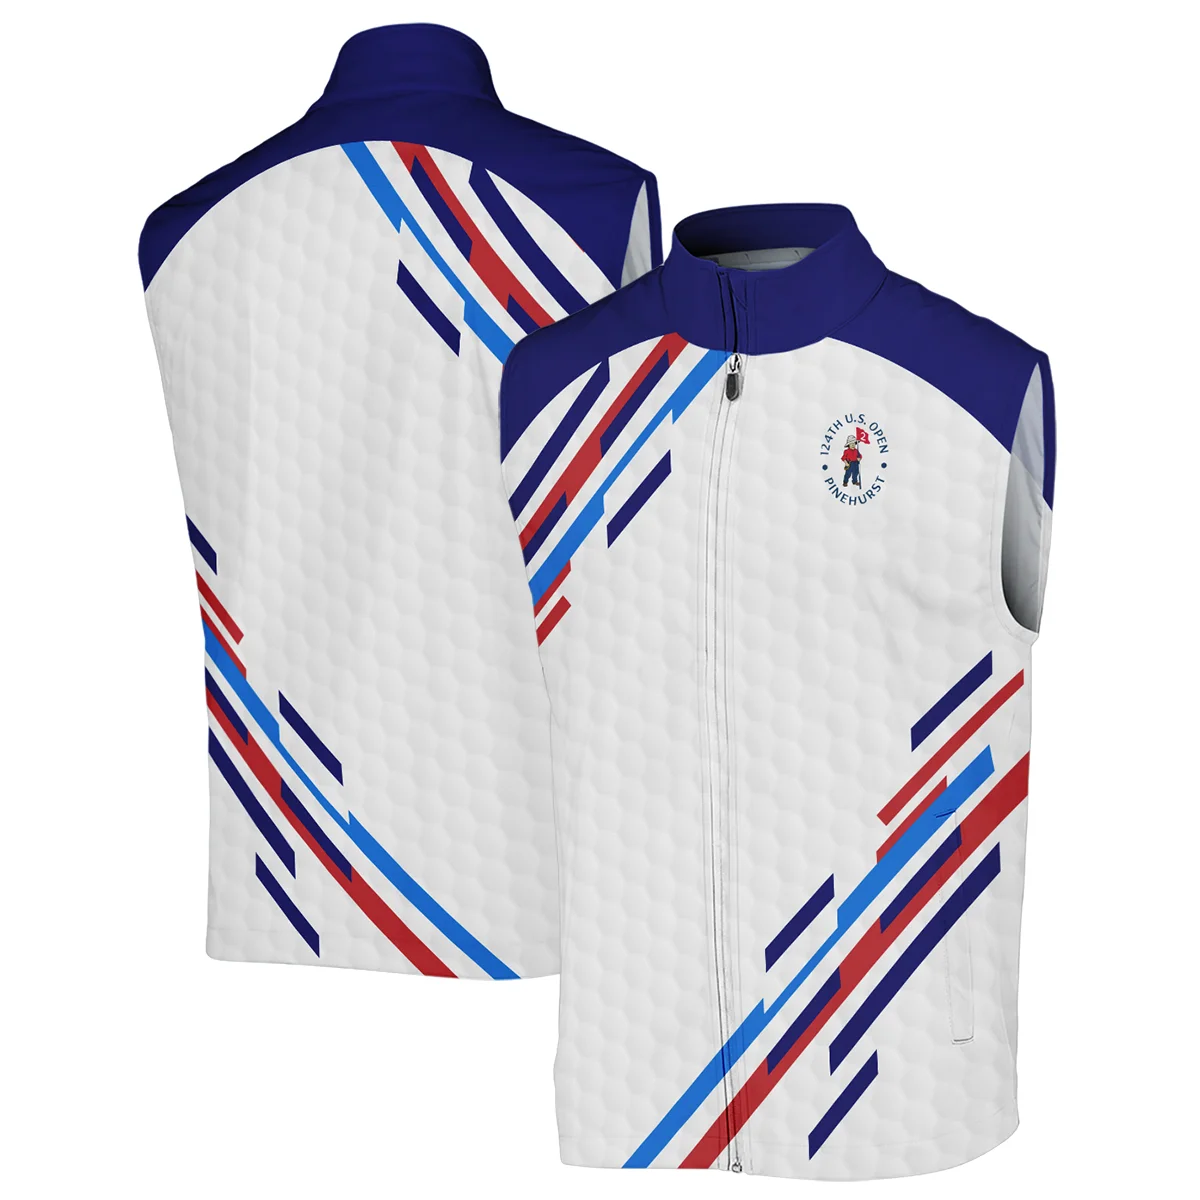 Golf Sport Titleist 124th U.S. Open Pinehurst Bomber Jacket Blue Red Golf Pattern White All Over Print Bomber Jacket